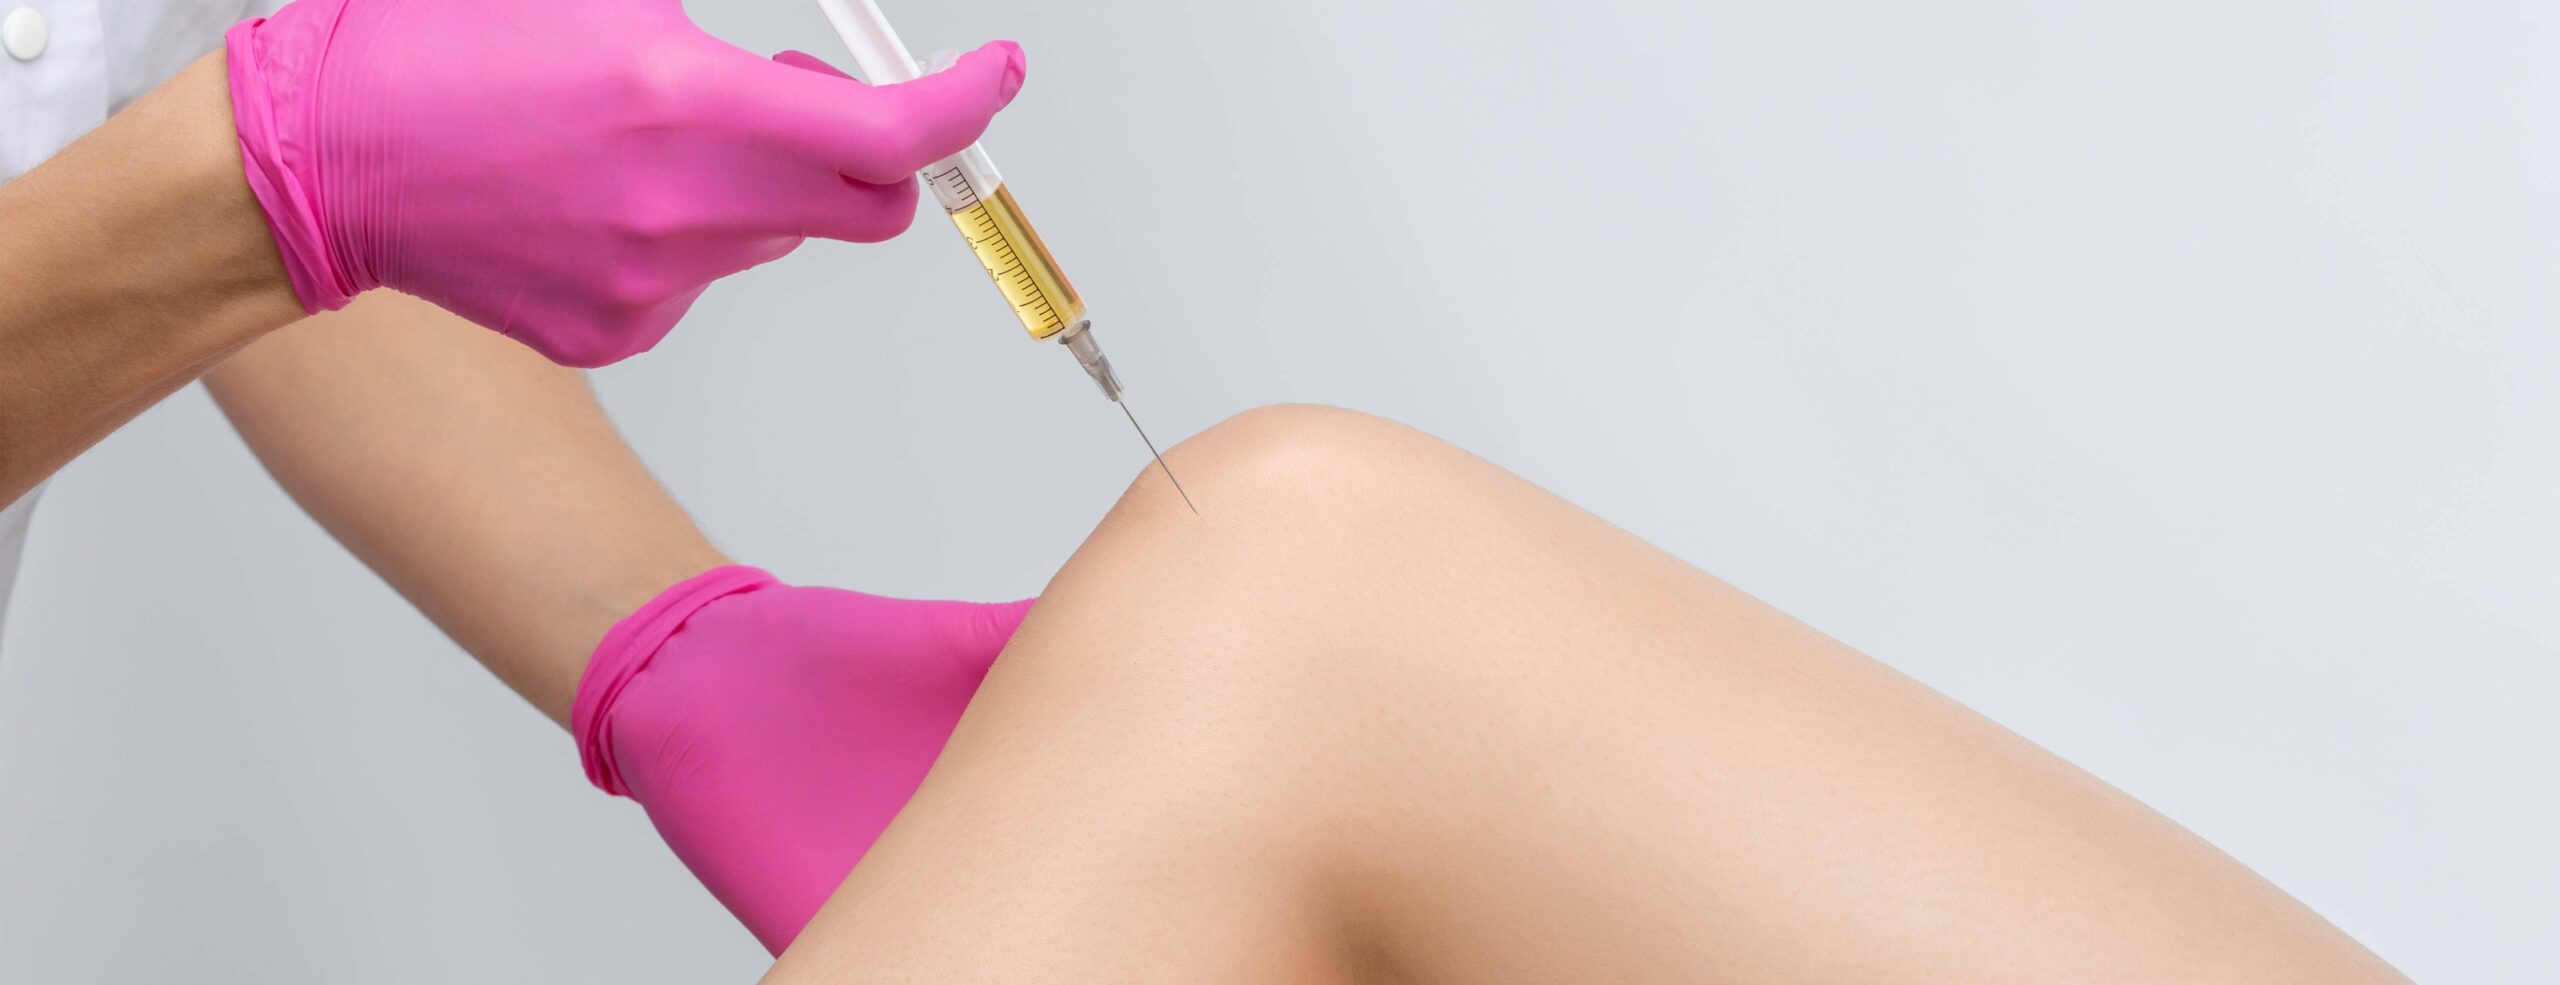 Quand faire des injections de PRP dans le genou ? |Dr Polle | Normandie